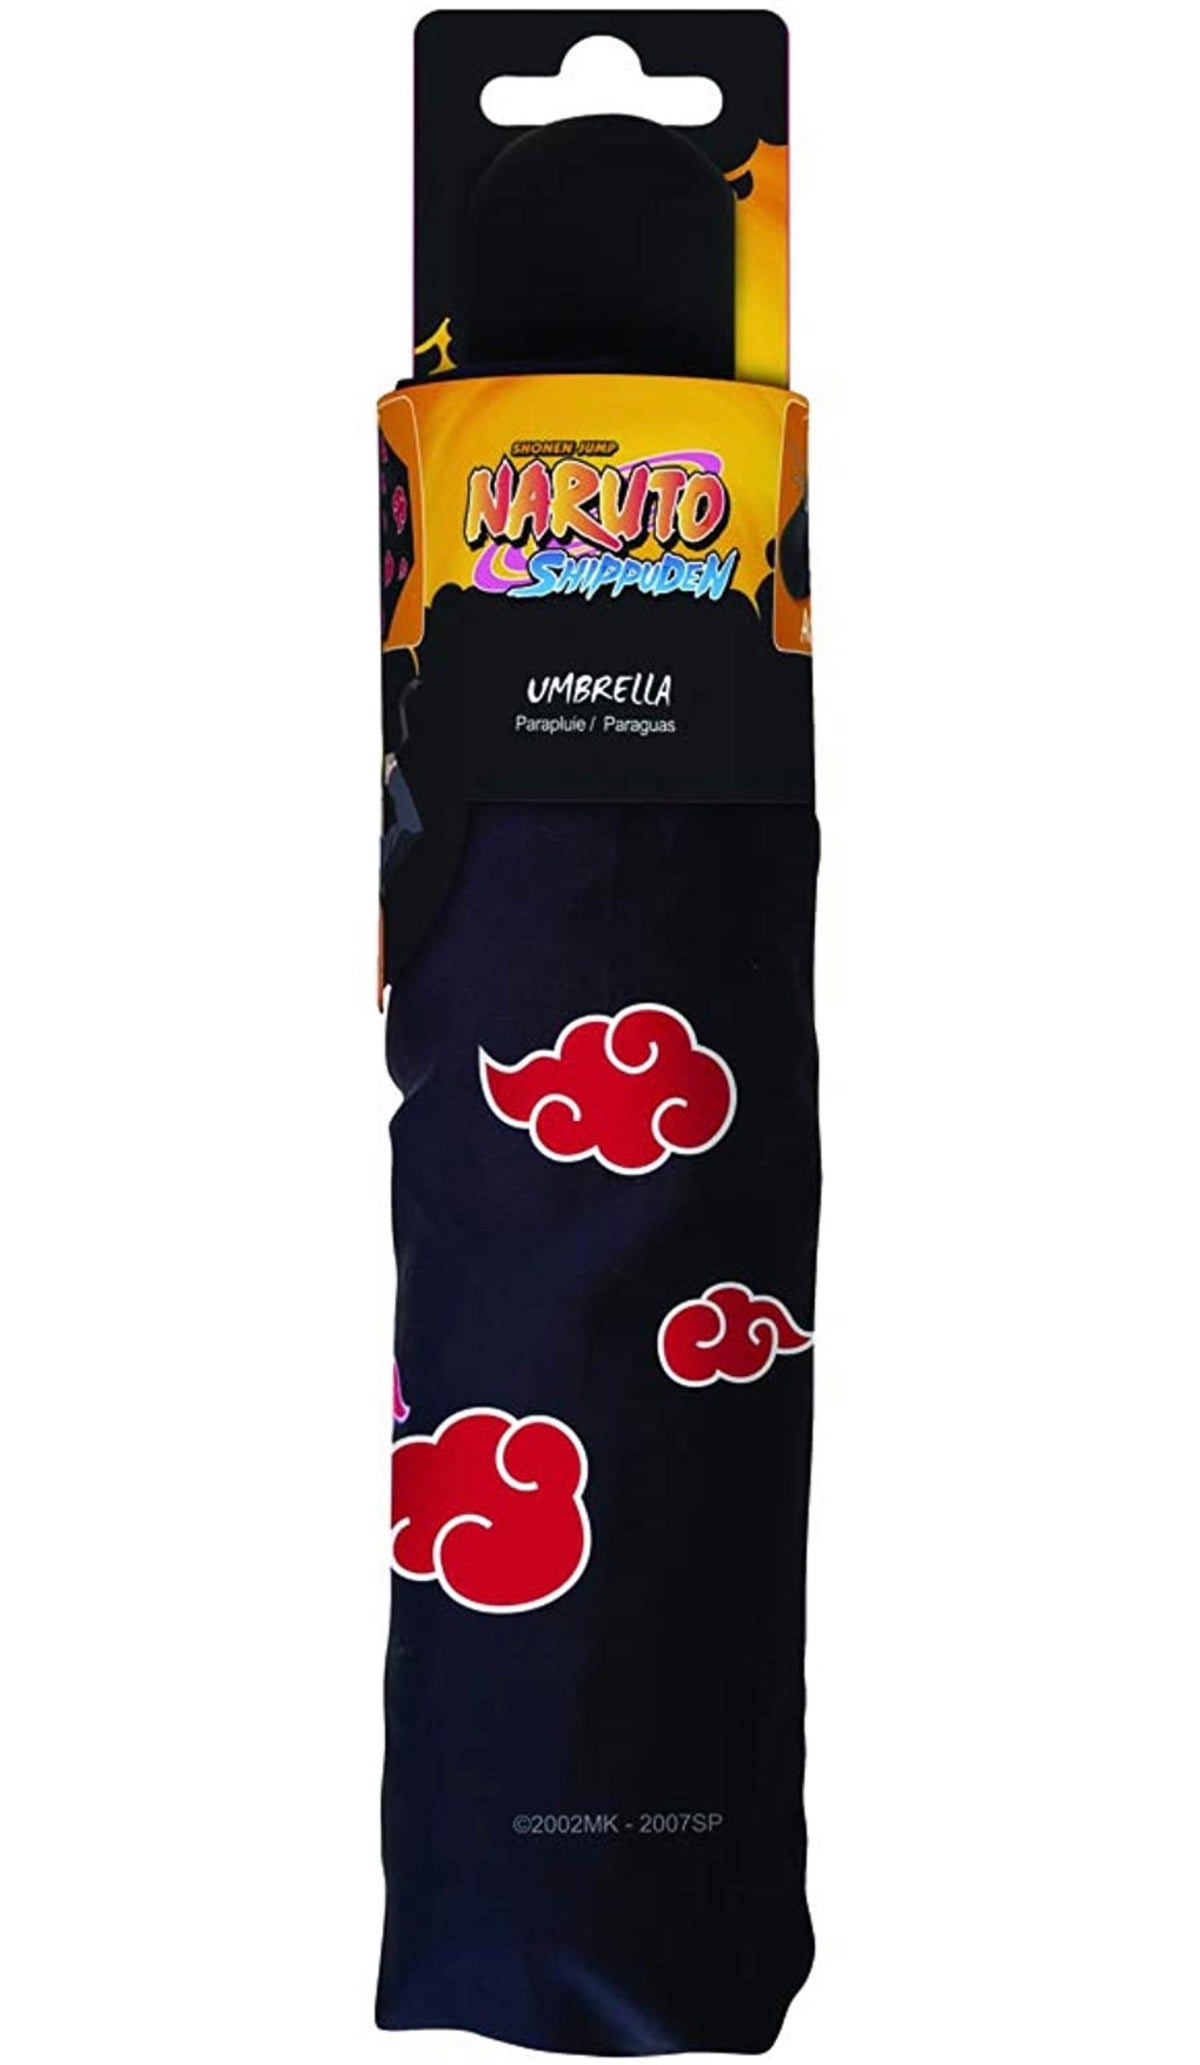 Naruto-Akatsuki umbrella - Otaku Haven LLC